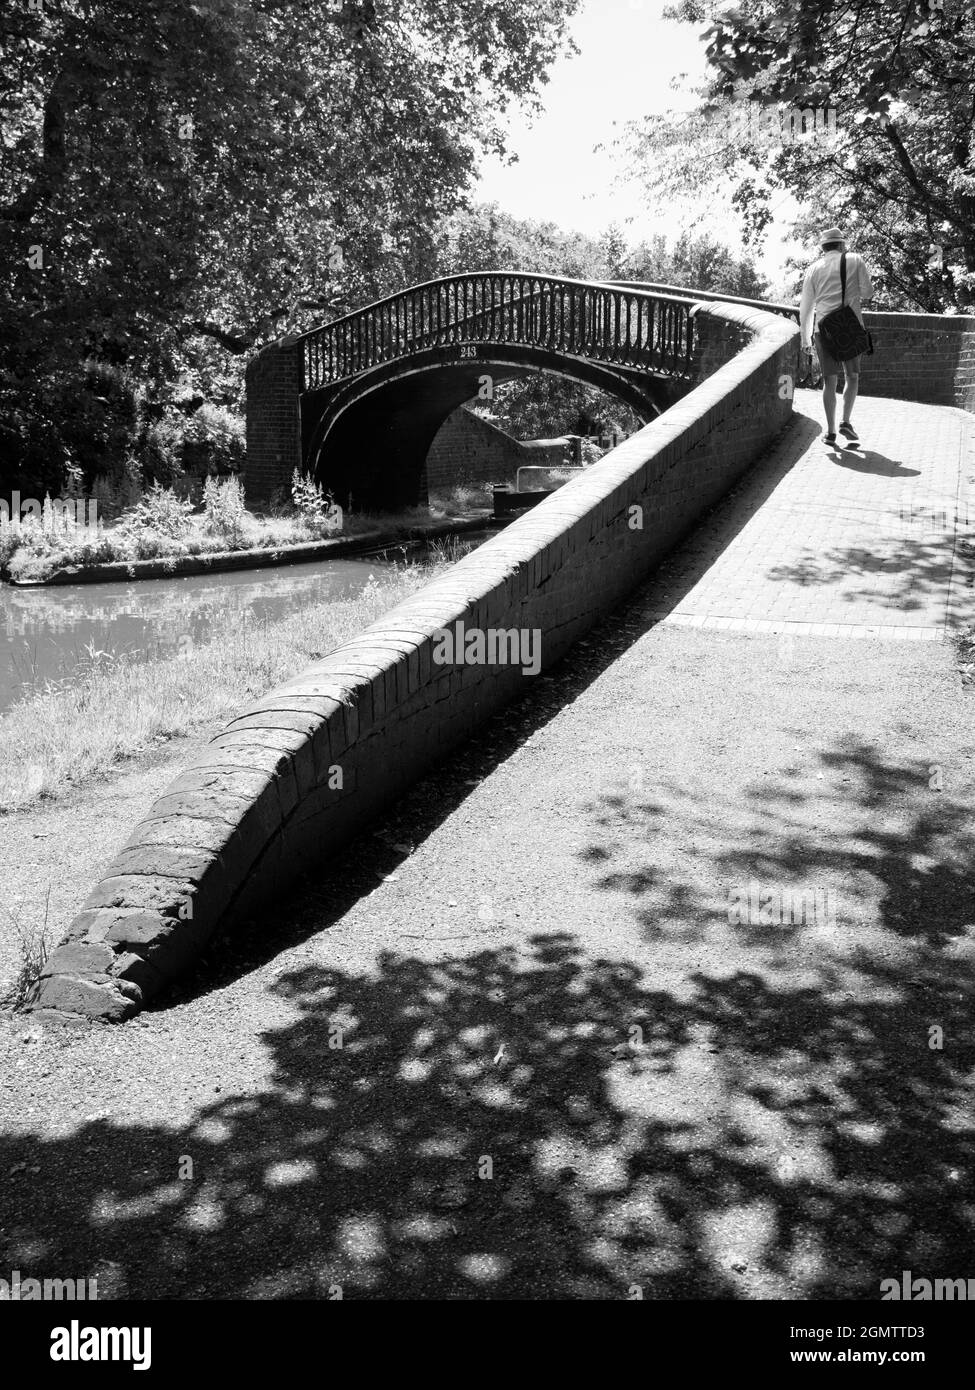 Oxford, England - 27. Juni 2019; ein Mann in Schuss. Die Wasserstraßen, Kanäle, Bäche und Flüsse von Oxford sind eine Quelle für viele ruhige, landschaftliche Freuden. Hier Stockfoto